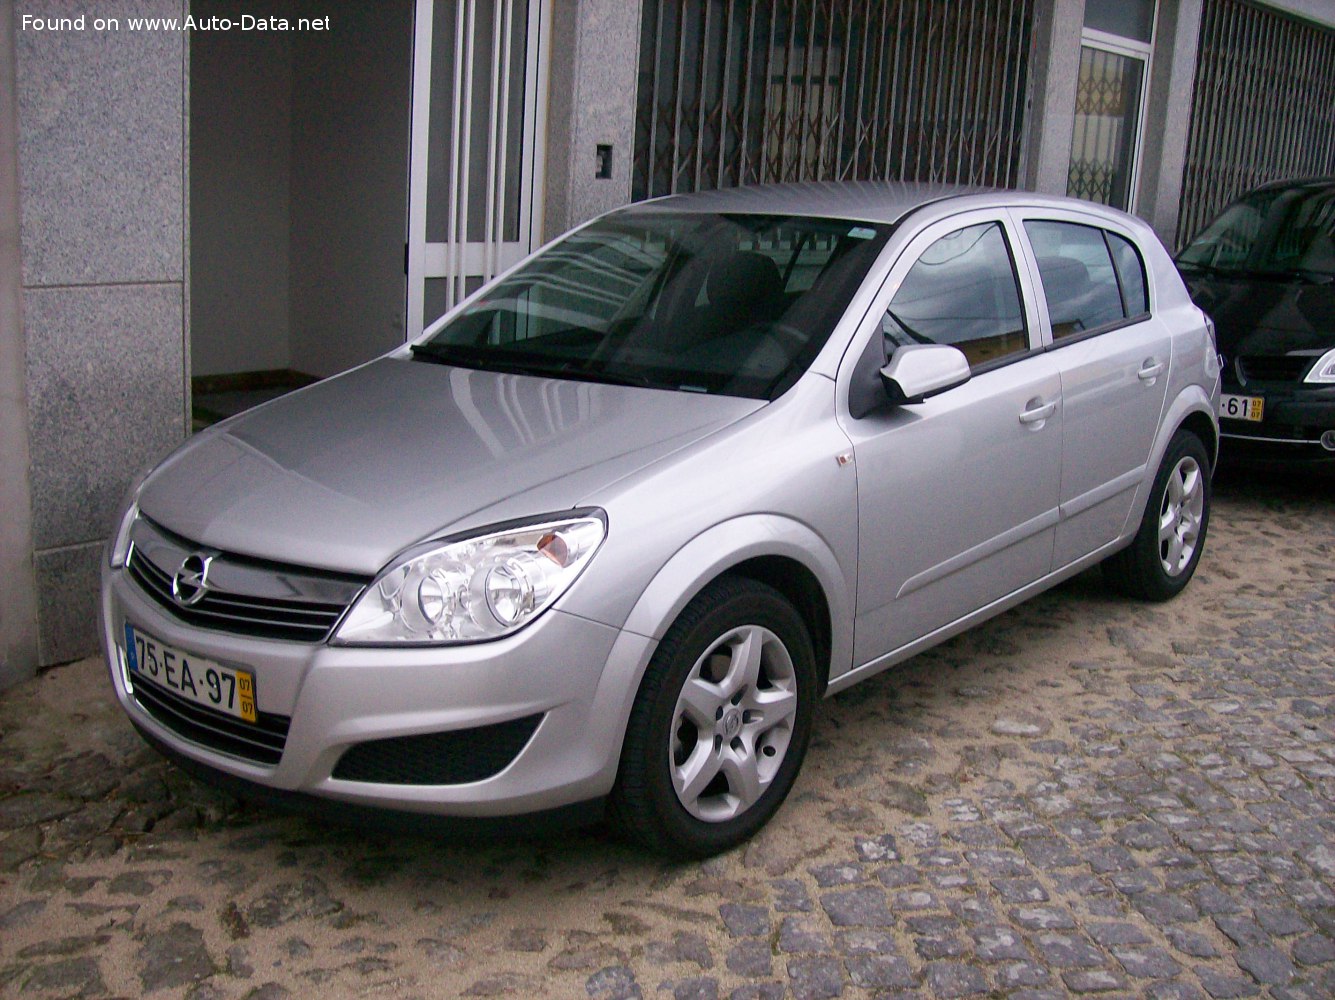 2007 Opel Astra H (facelift 2007) 1.6 Turbo ECOTEC (180 Hp